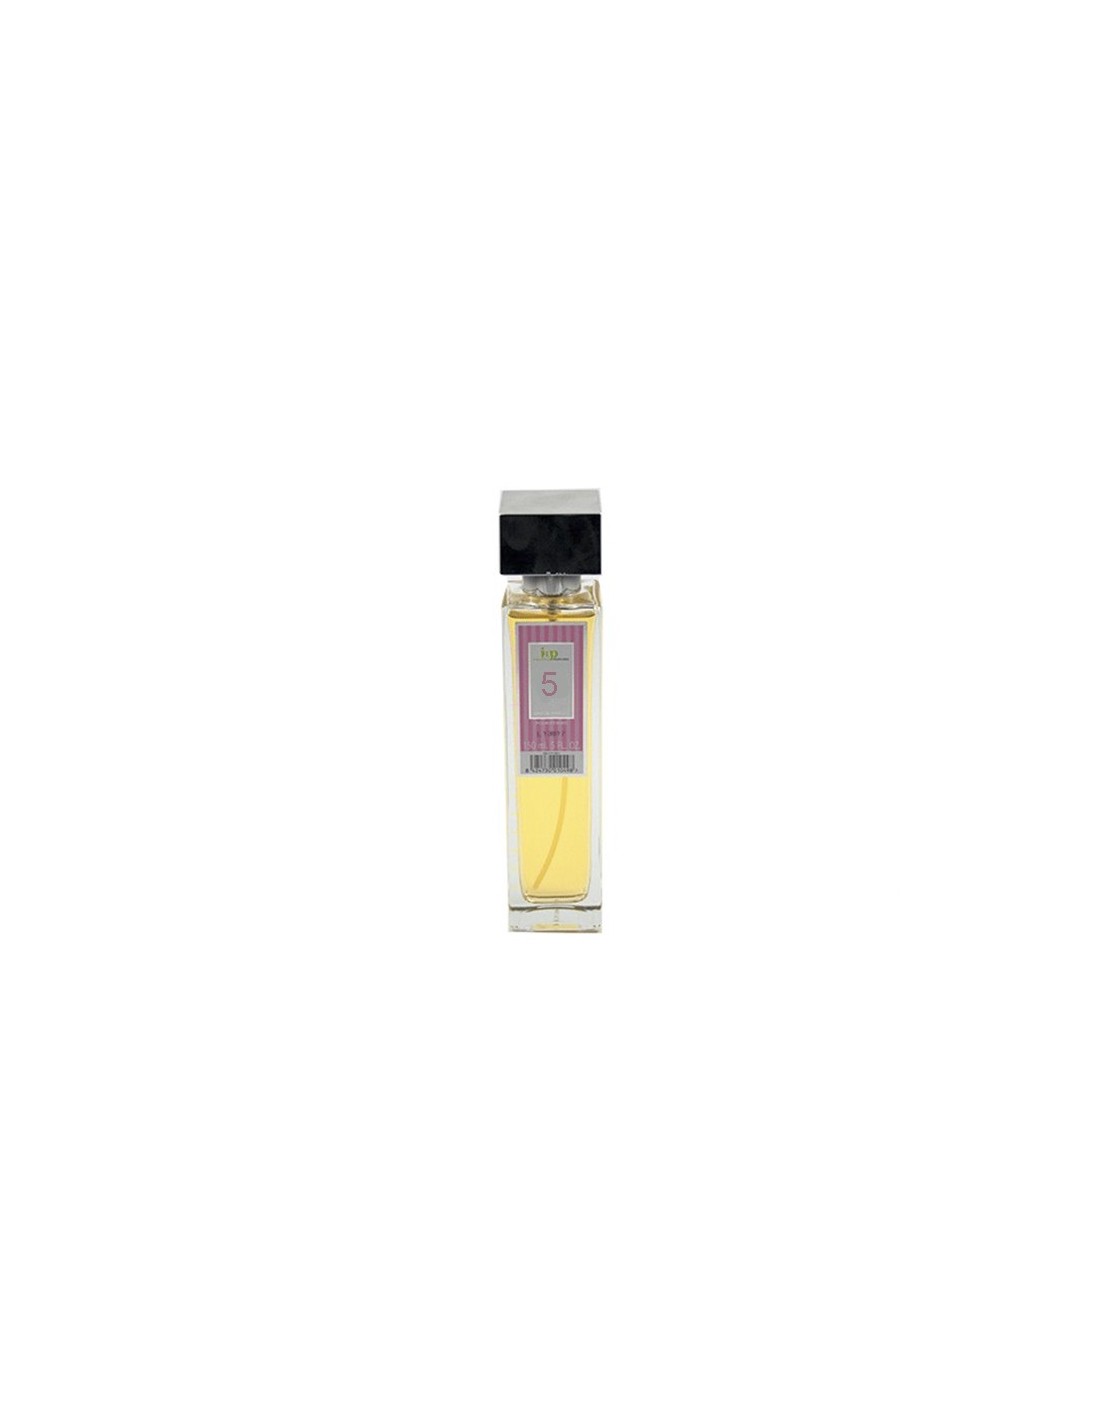 IAP Perfume Mujer N5 150ml